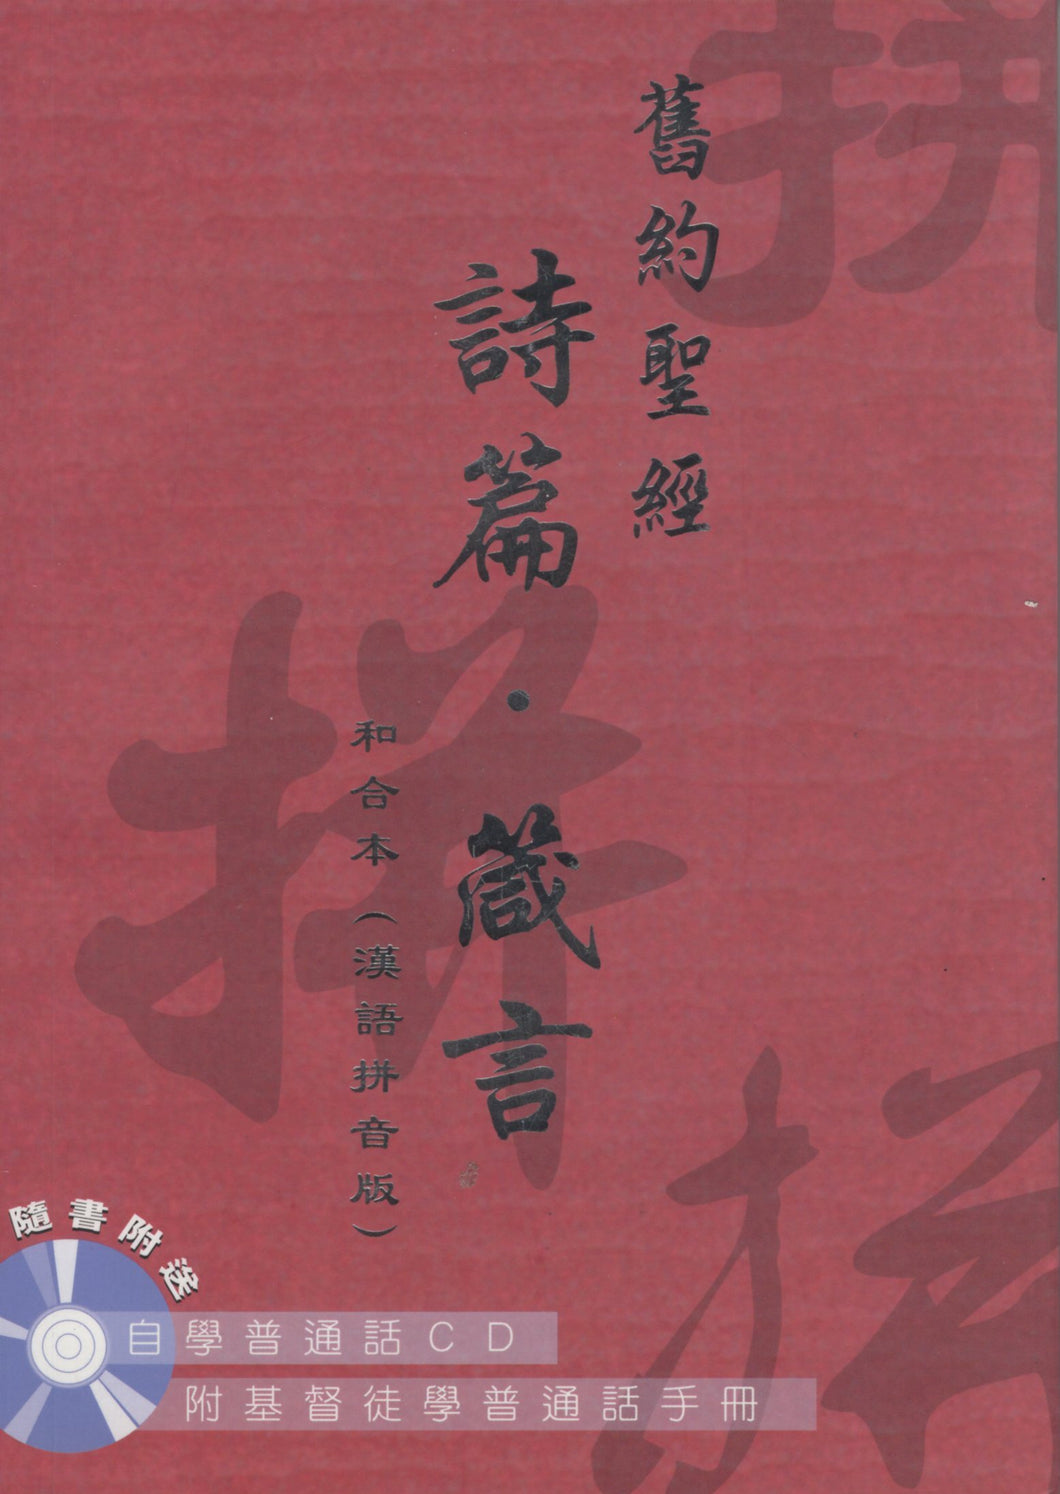 旧约圣经-诗篇、箴言汉语拼音版(和合本/附自学普通话CD) #01A-019A 